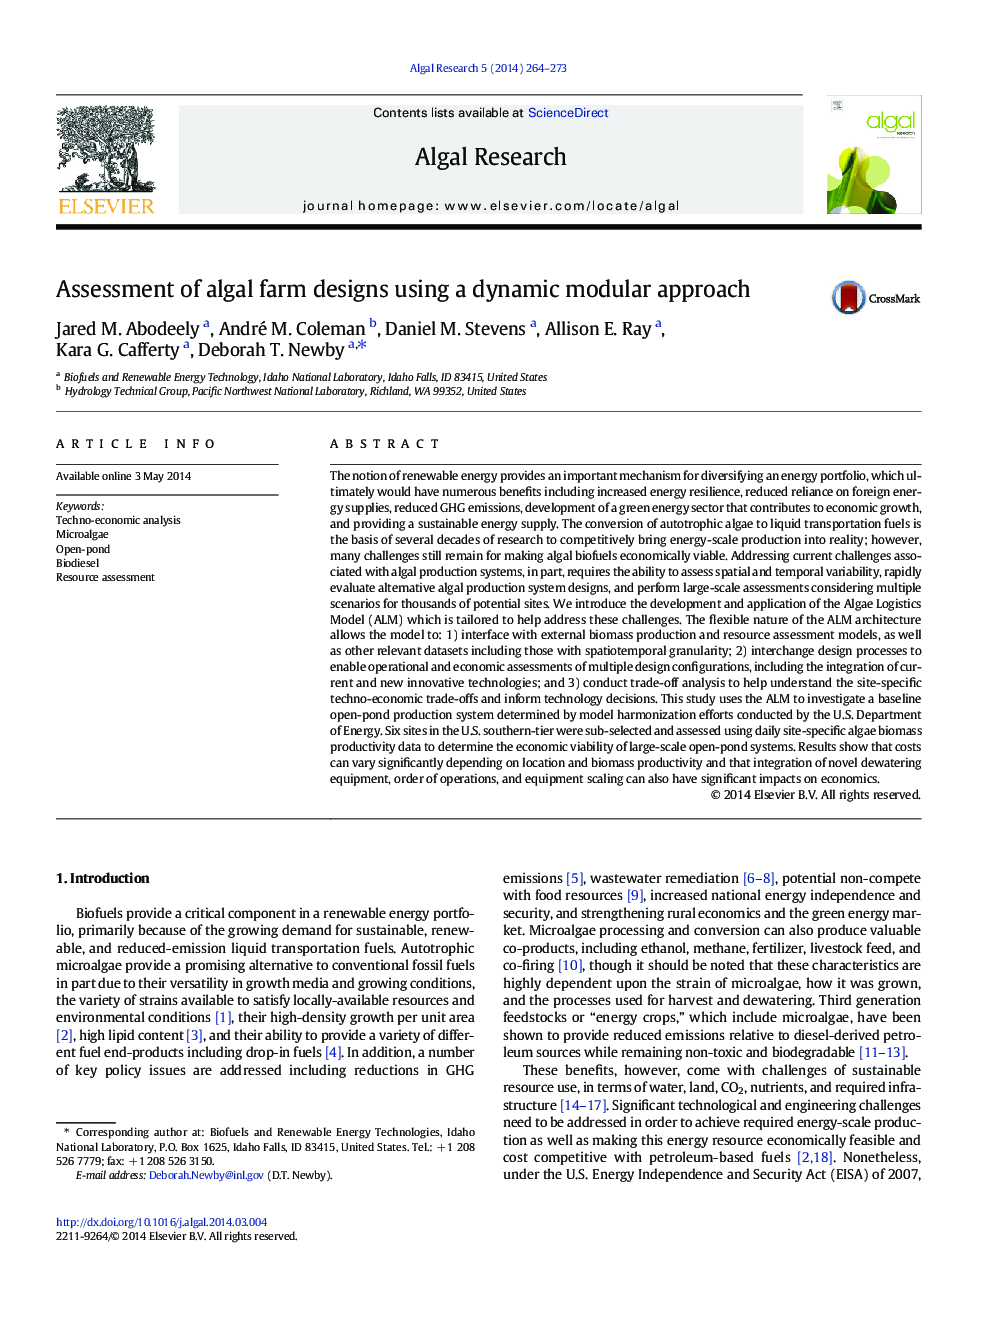 Assessment of algal farm designs using a dynamic modular approach